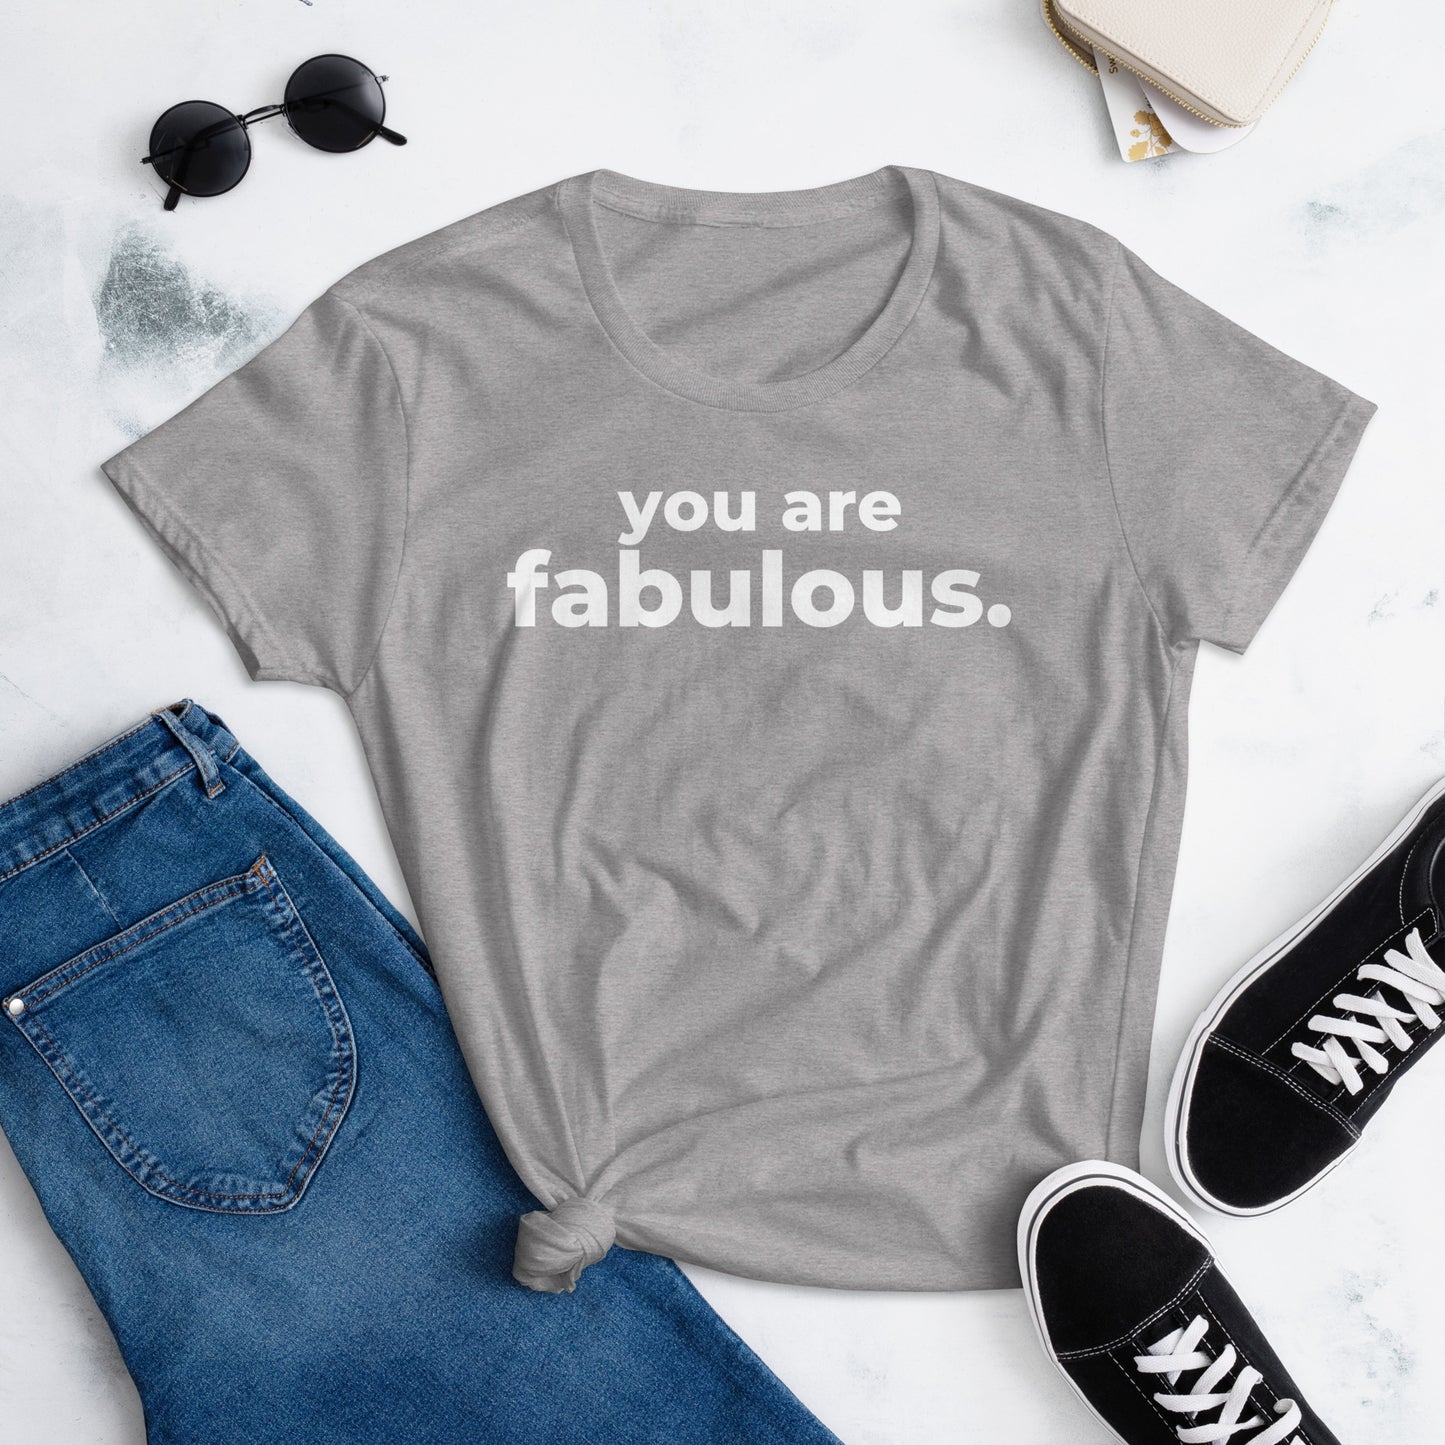 You are Fabulous - Women's short sleeve t-shirt